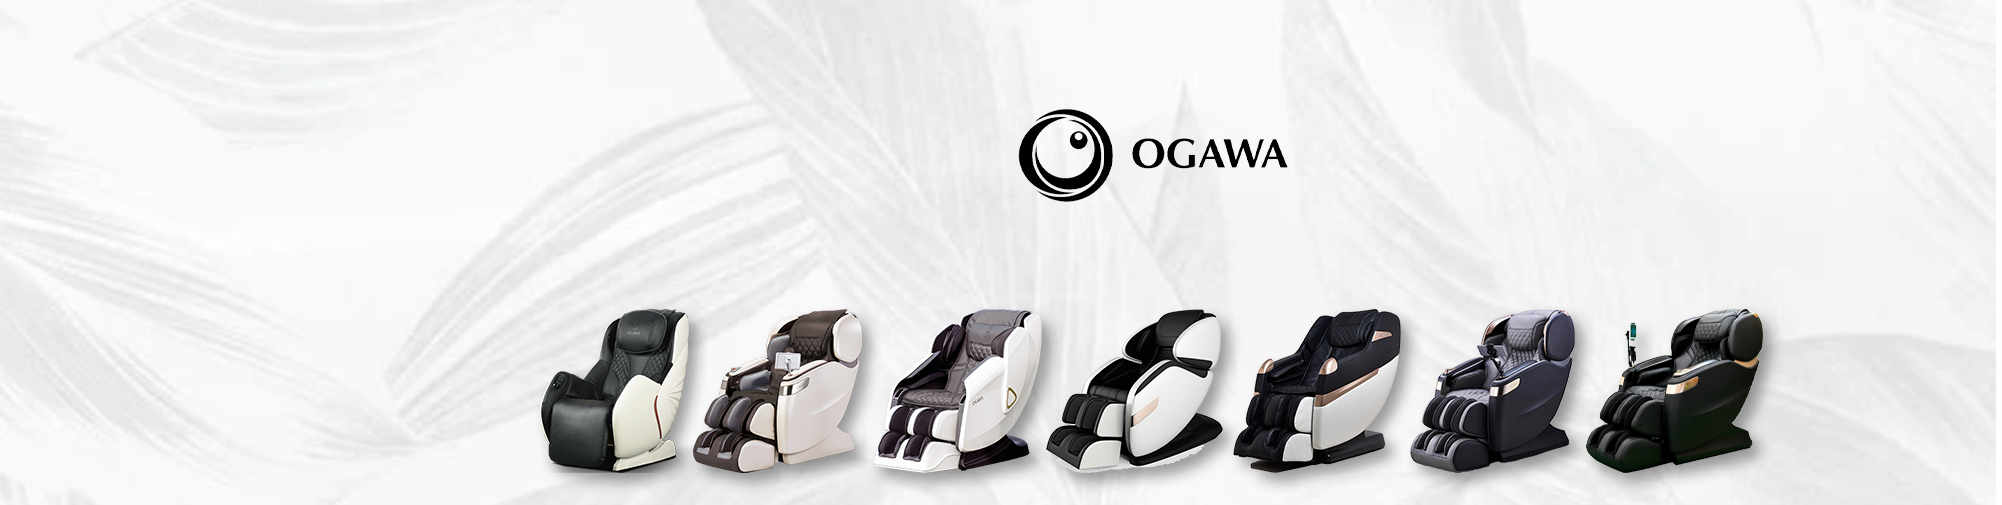 OGAWA | Mondo delle poltrone da massaggio